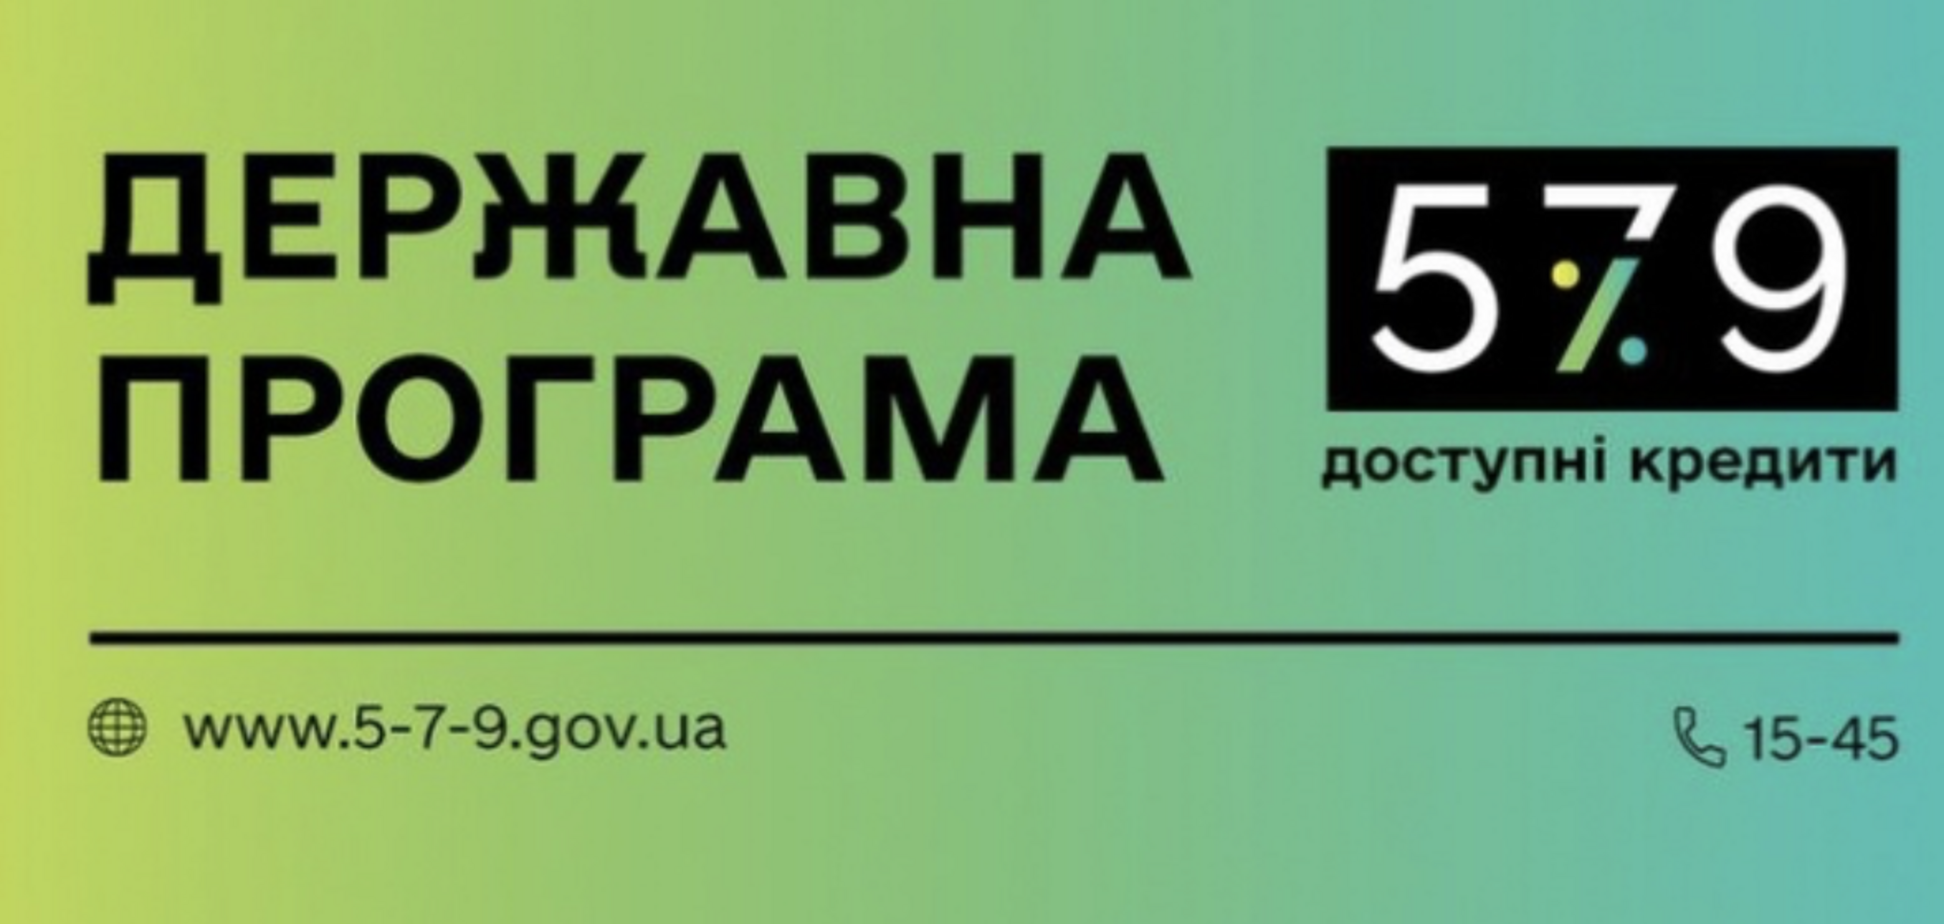 Укргазбанк во время карантина выдает доступные кредиты под 5-7-9%